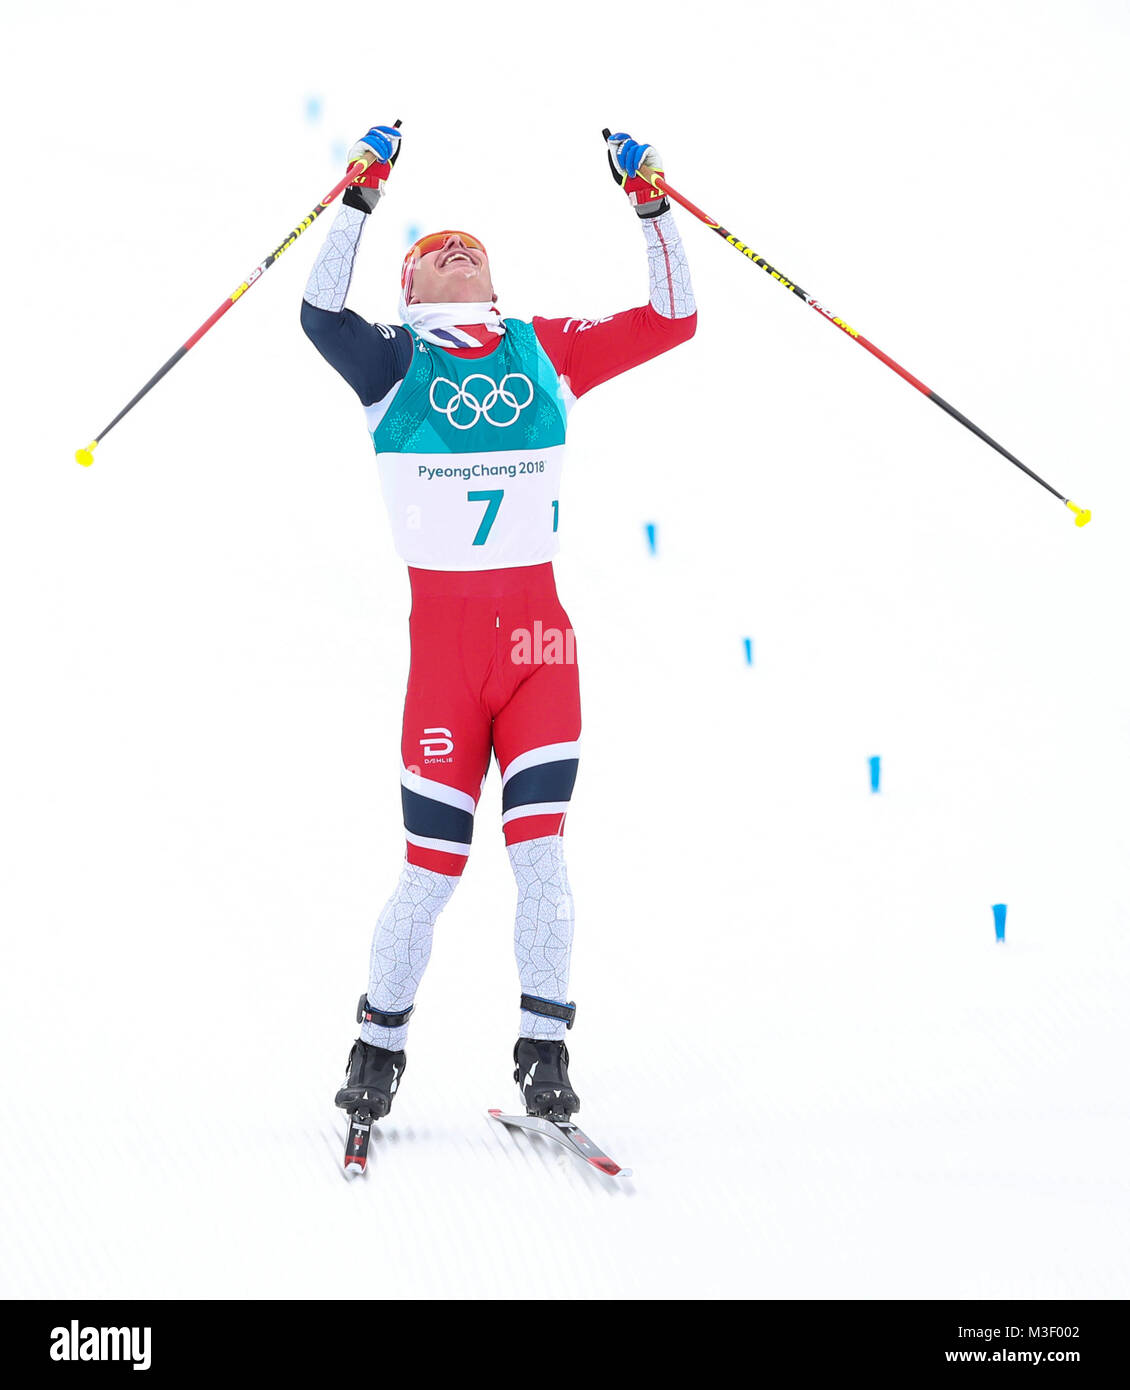 La Norvège Simen Hegstad Krueger célèbre sa victoire dans la mens 15km  + 15km Skiathlon à l'Alpensia Ski Centre au cours de la deuxième journée de l'occasion des Jeux Olympiques d'hiver 2018 de PyeongChang en Corée du Sud. Banque D'Images